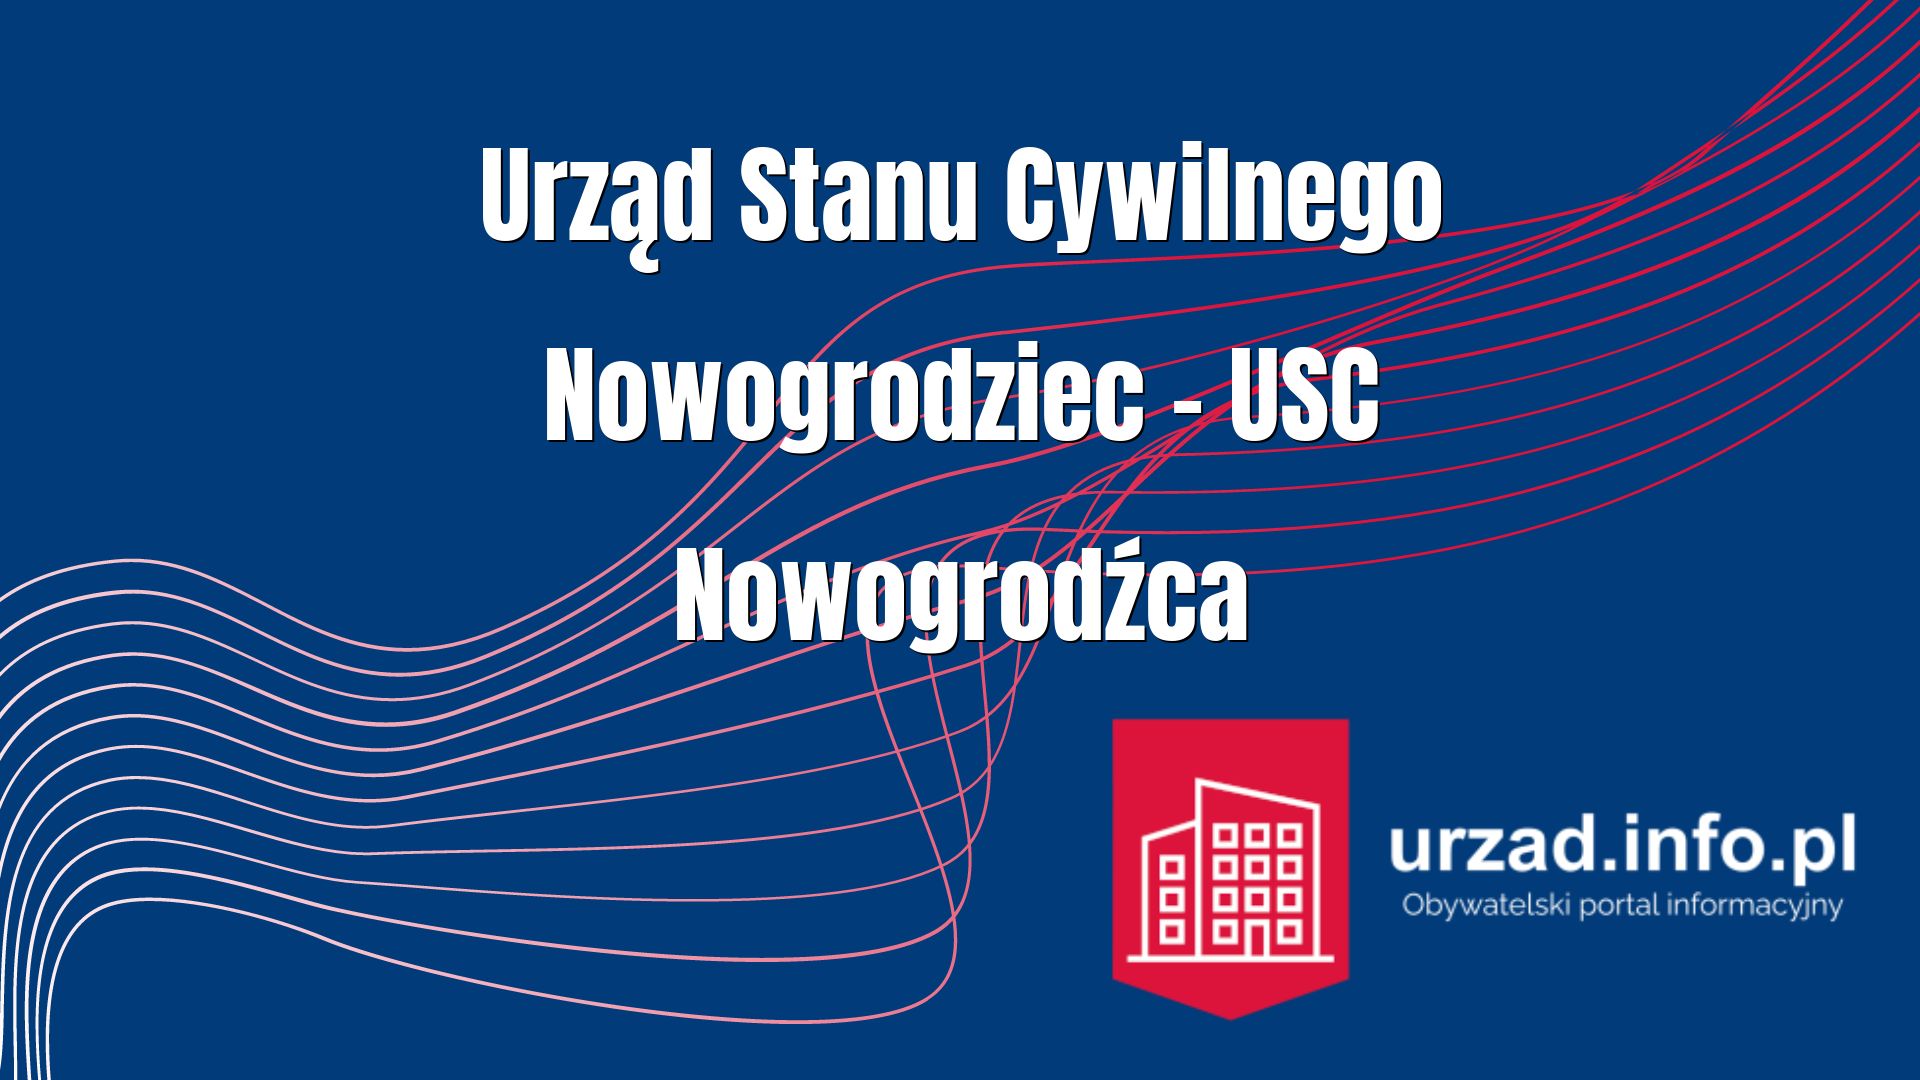 Urząd Stanu Cywilnego Nowogrodziec – USC Nowogrodźca